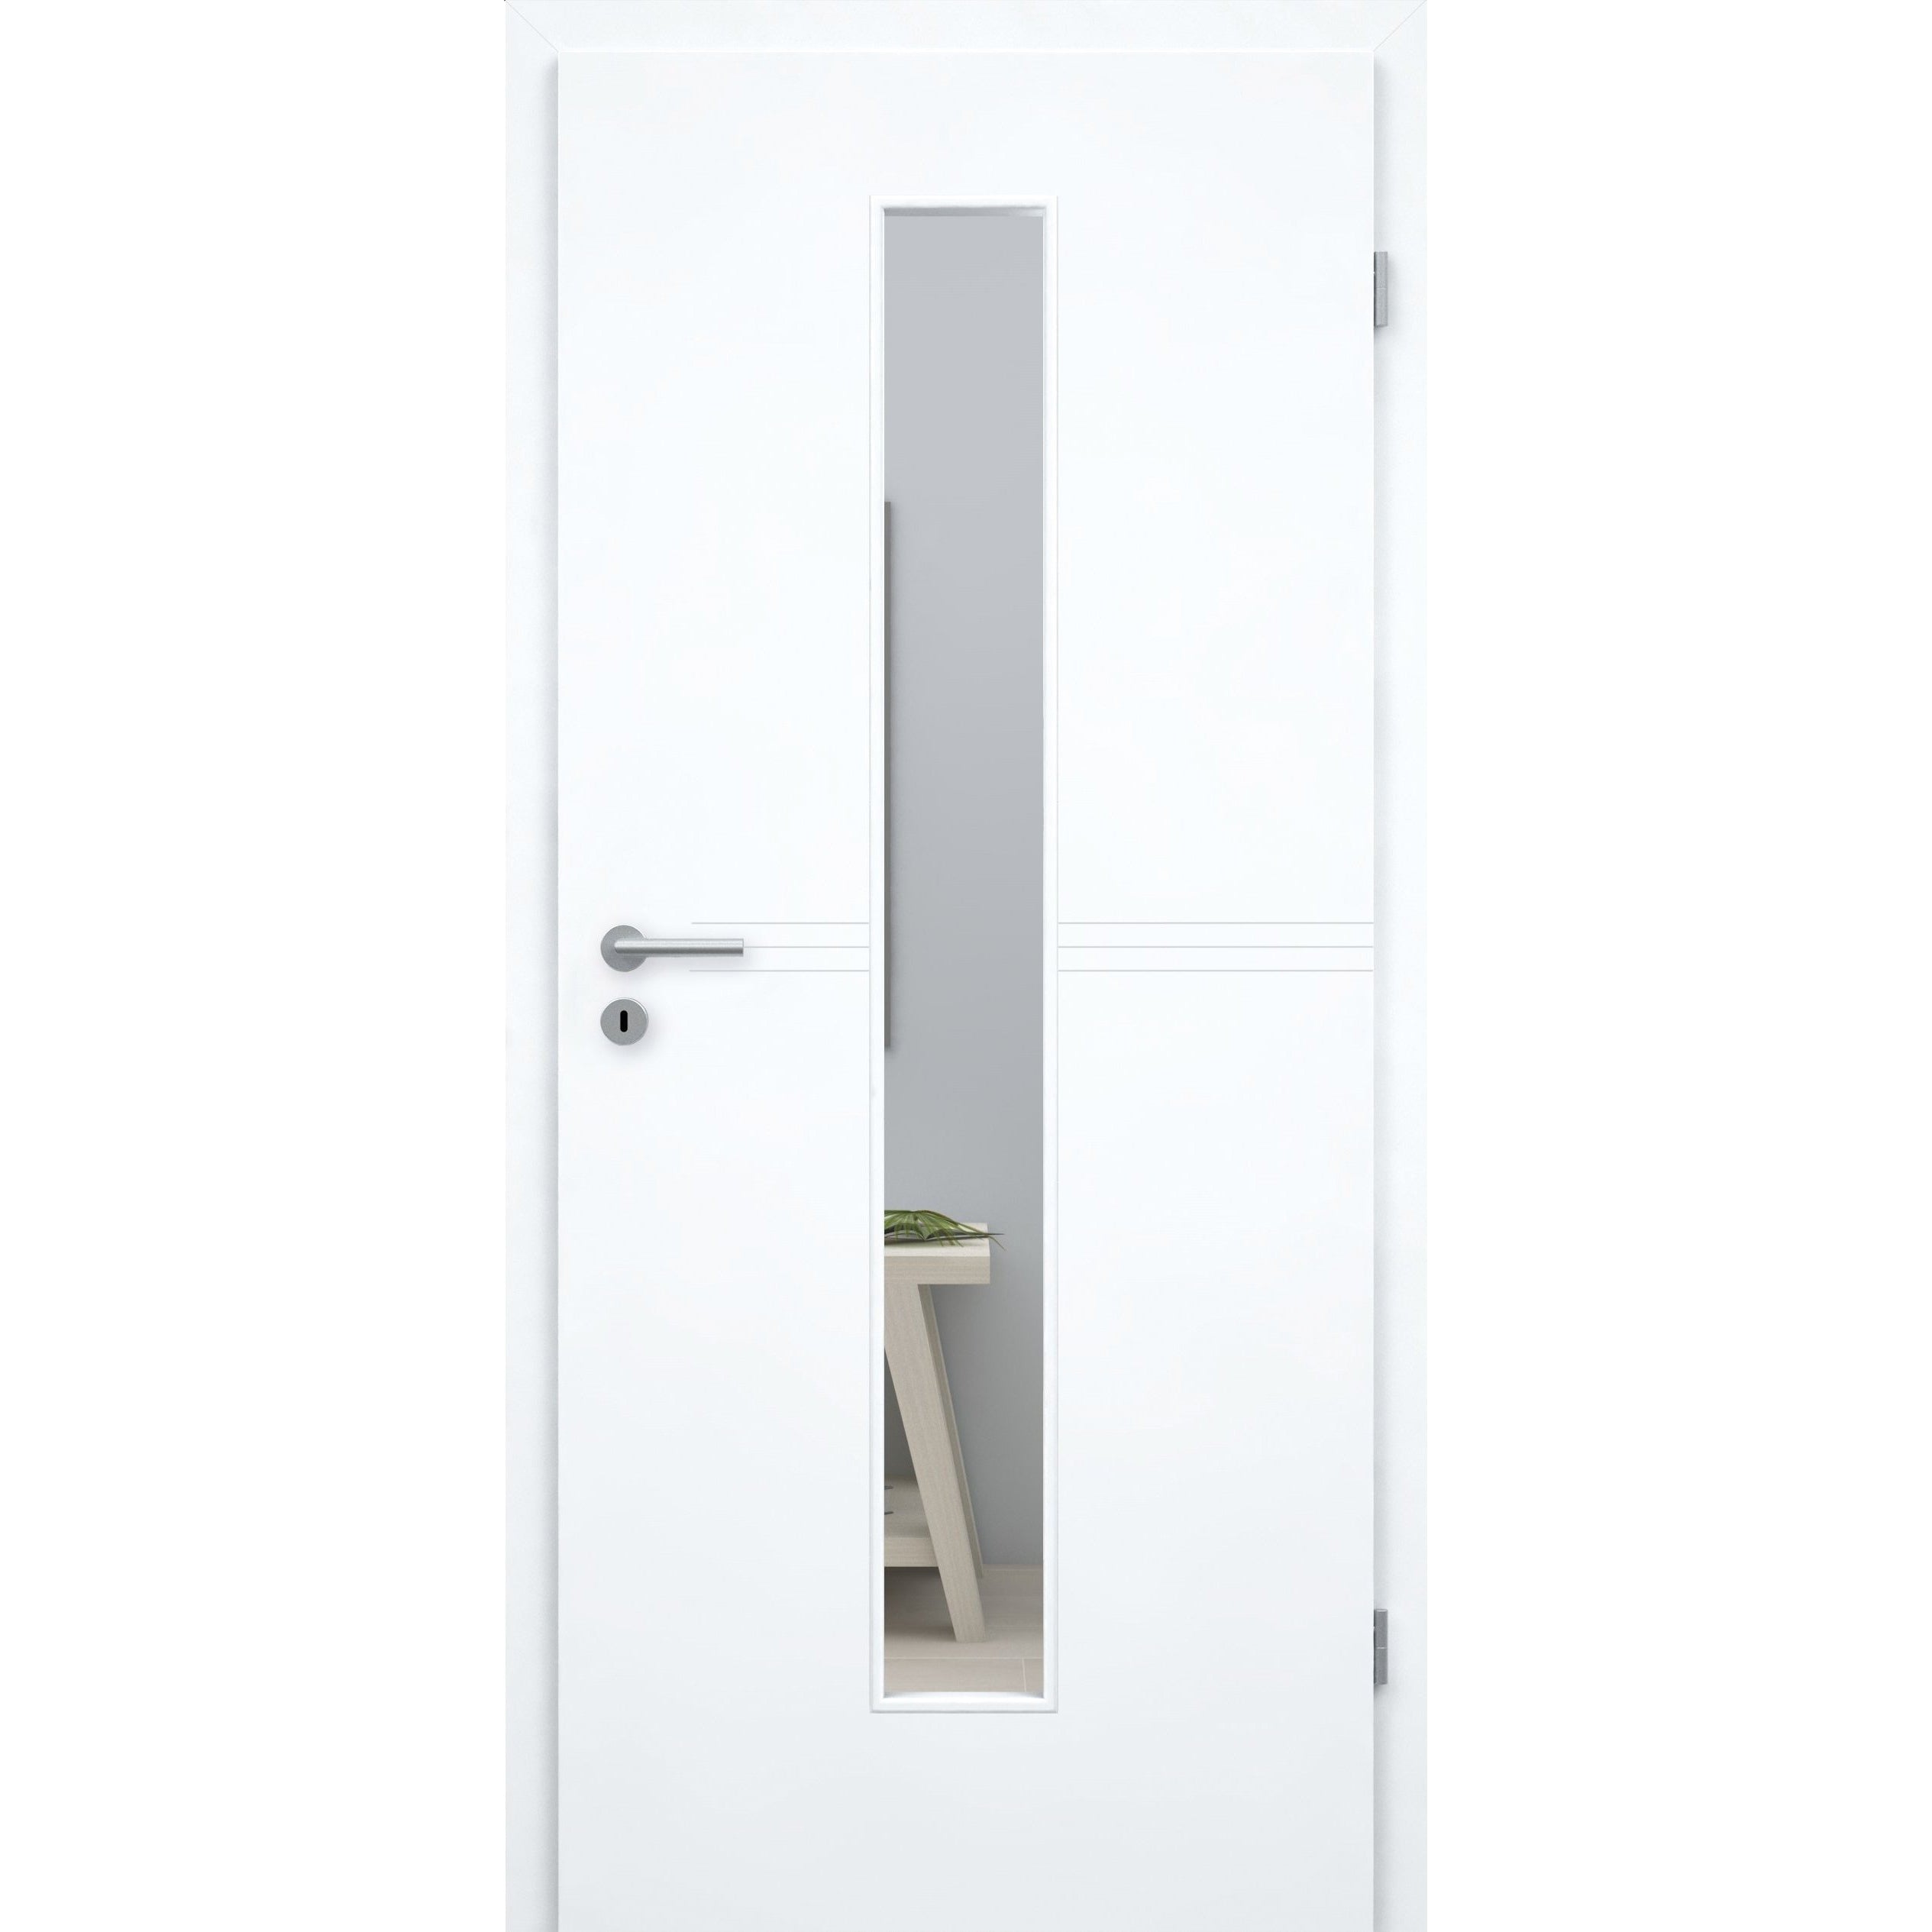 Zimmertür mit Lichtausschnitt brillant-weiß 3 Rillen Designkante - Modell Designtür Q33LAM